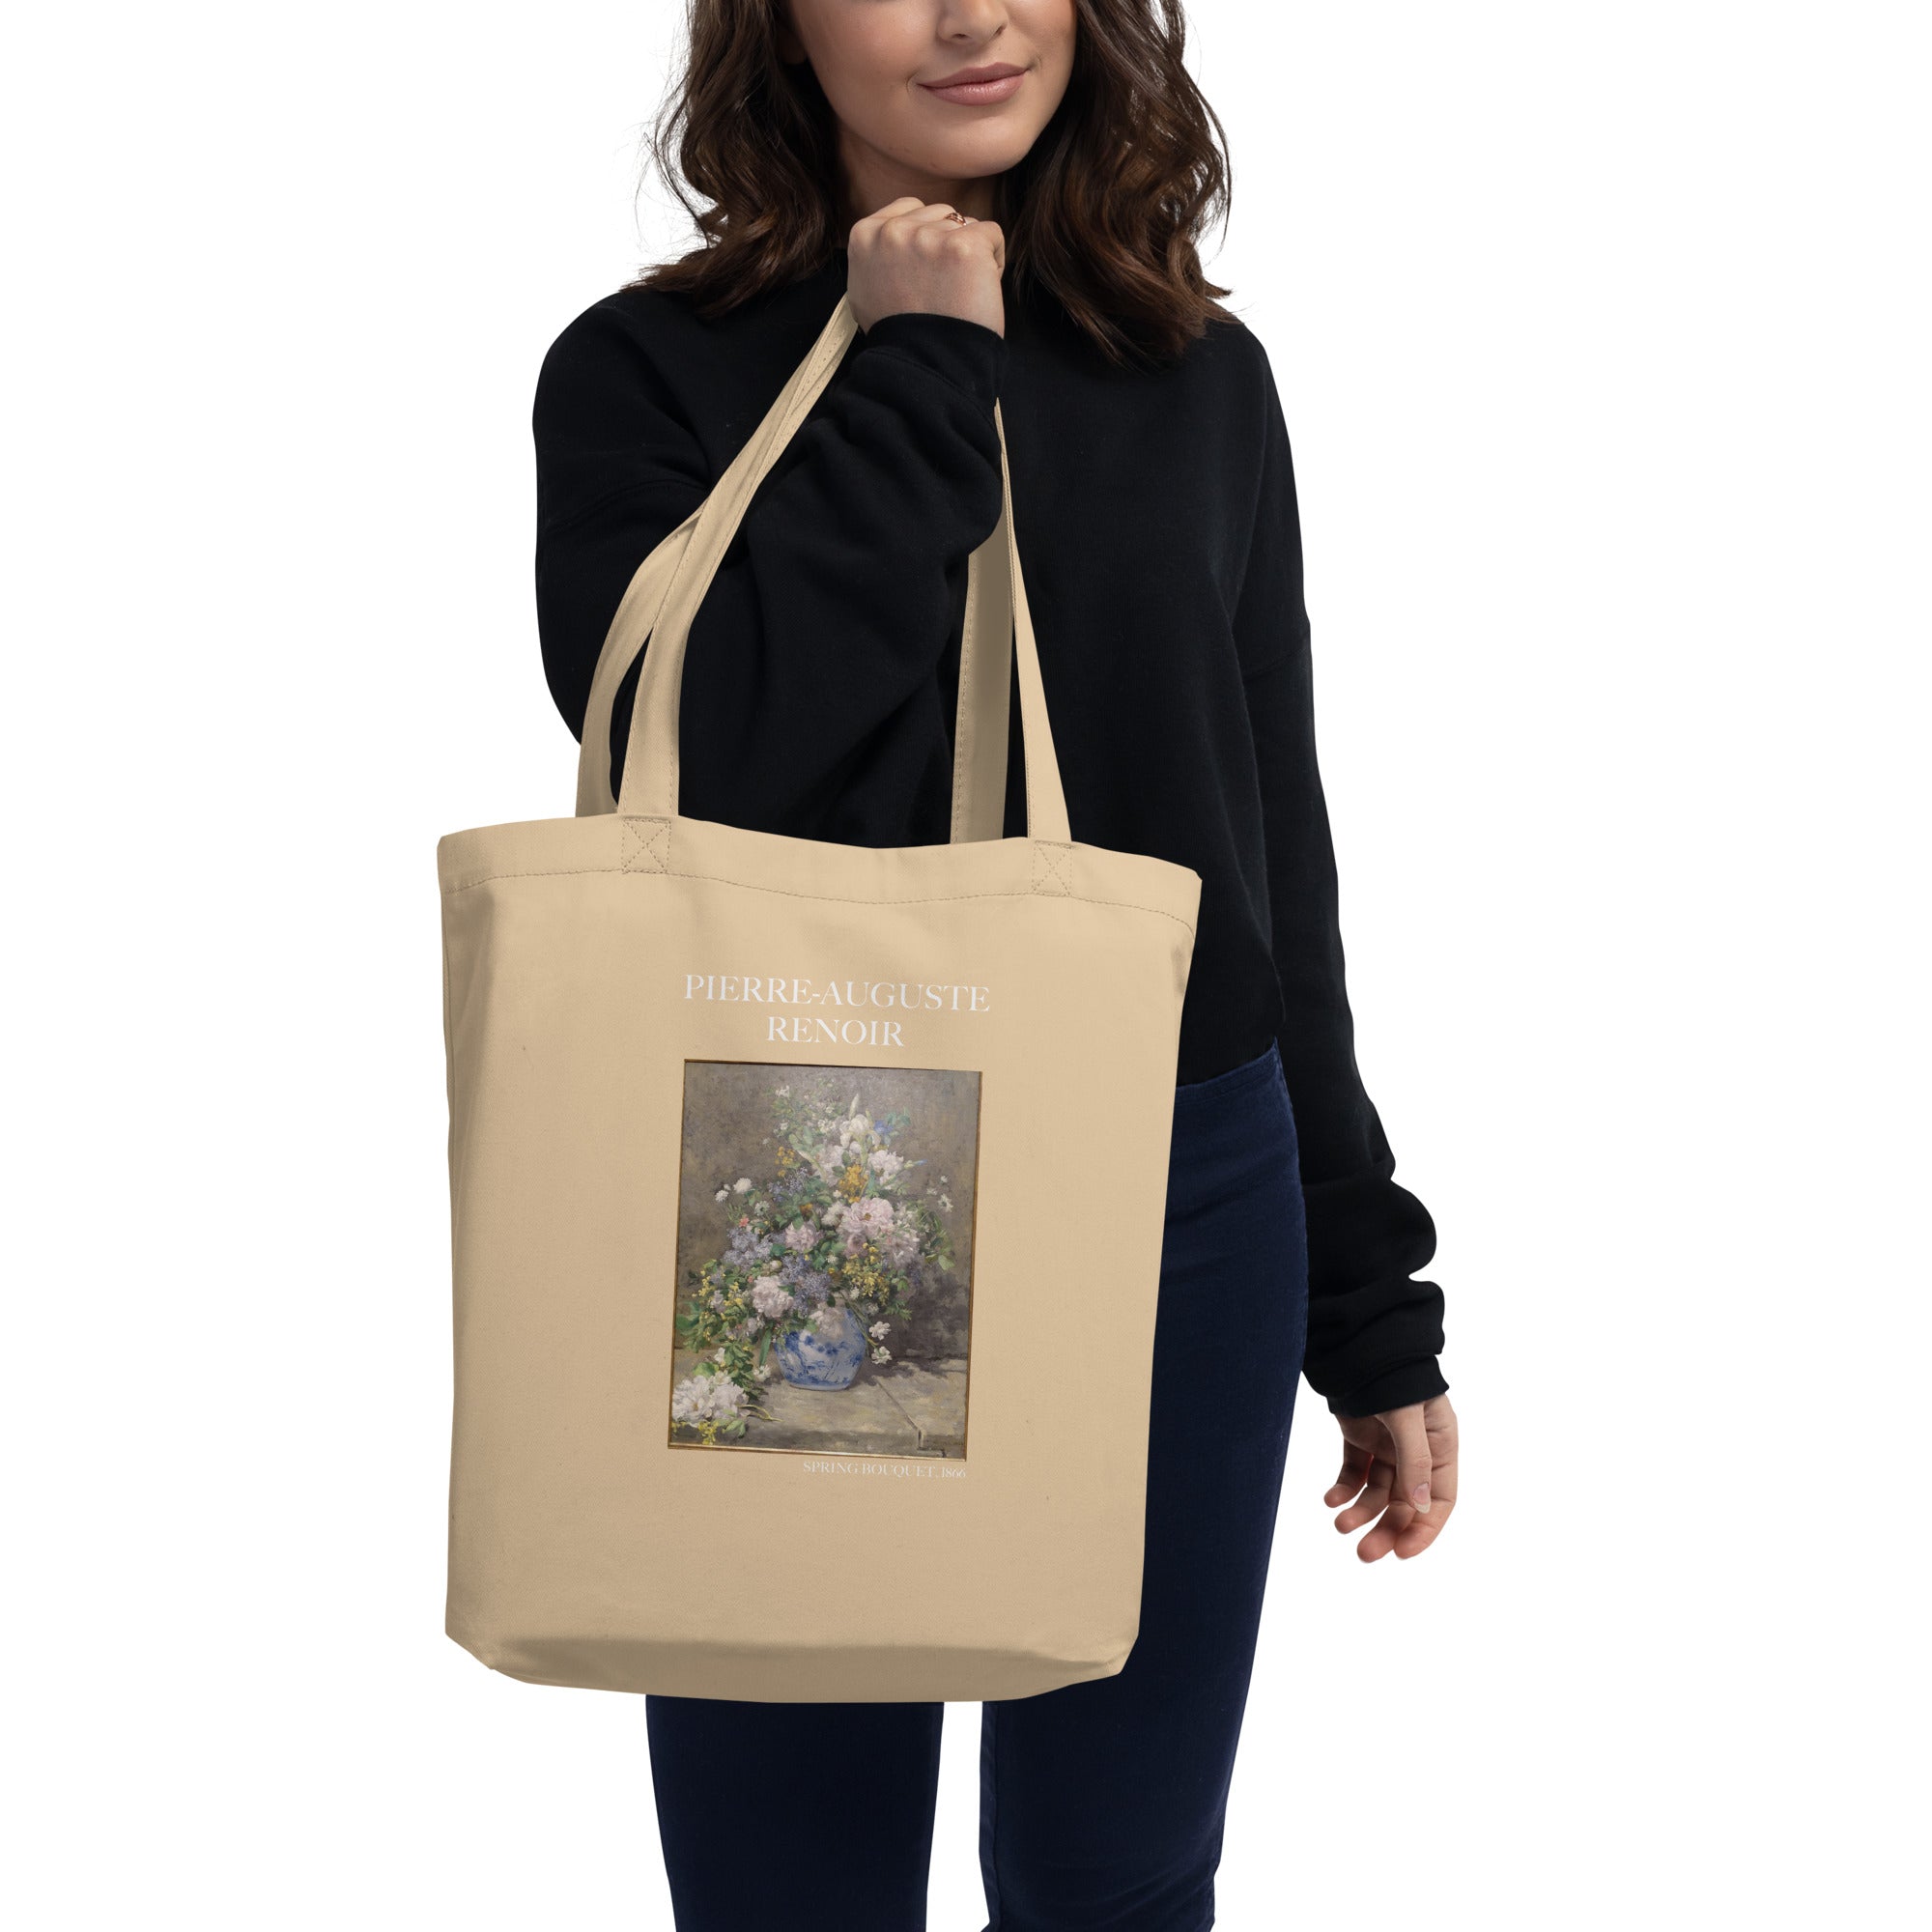 Pierre-Auguste Renoir 'Spring Bouquet' Famous Painting Totebag | Eco Friendly Art Tote Bag